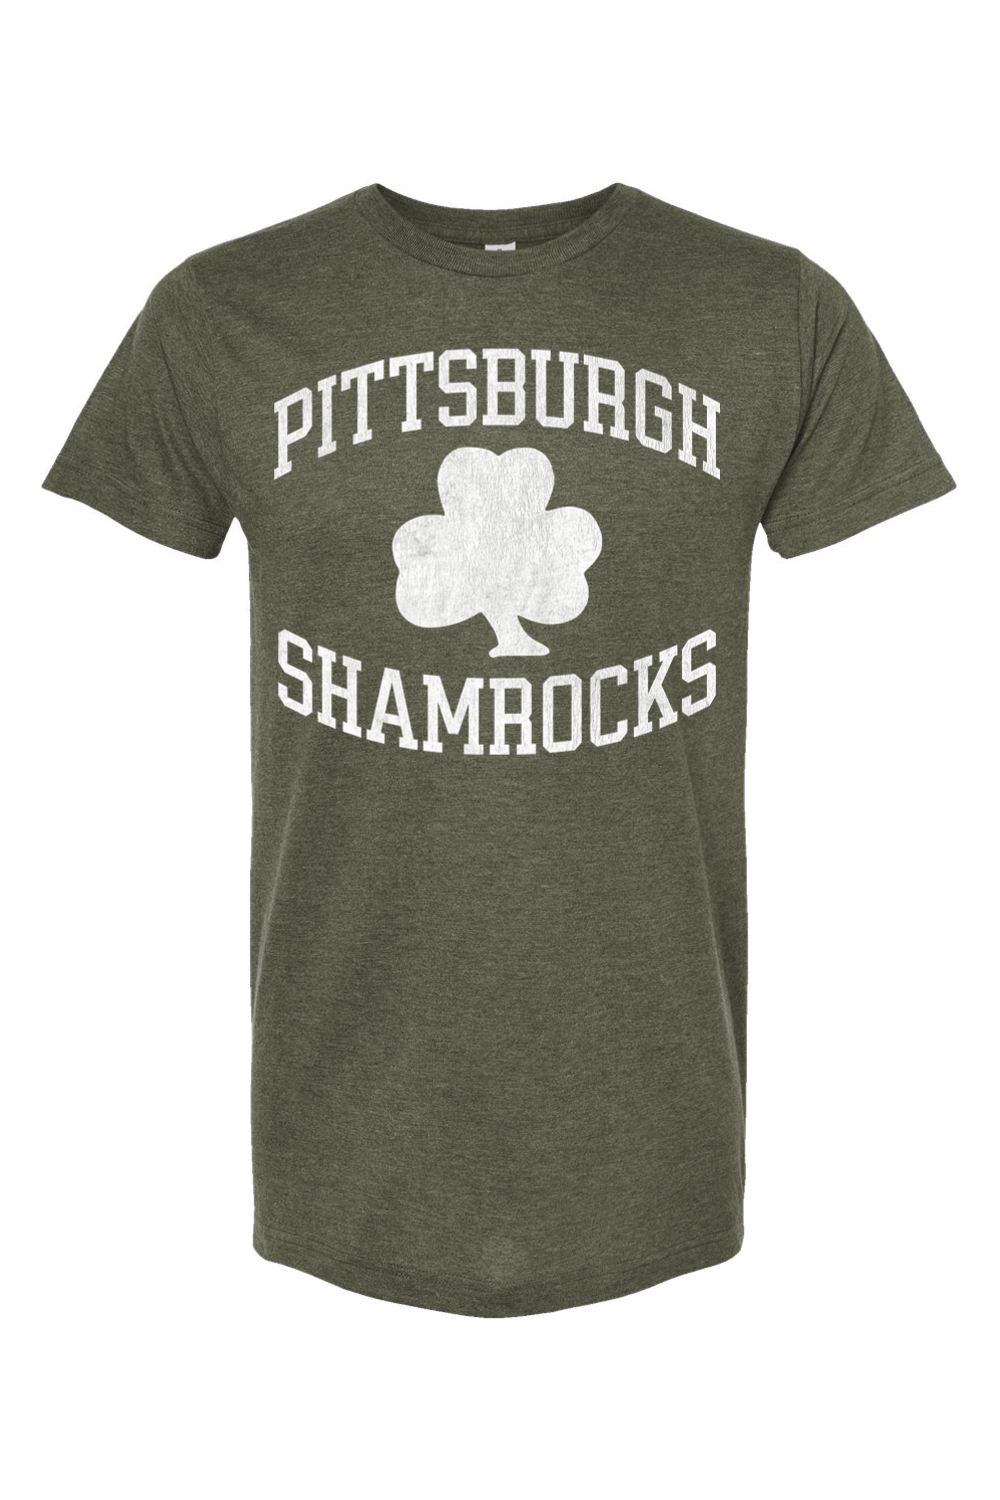 Pittsburgh Shamrocks Hockey - Yinzylvania